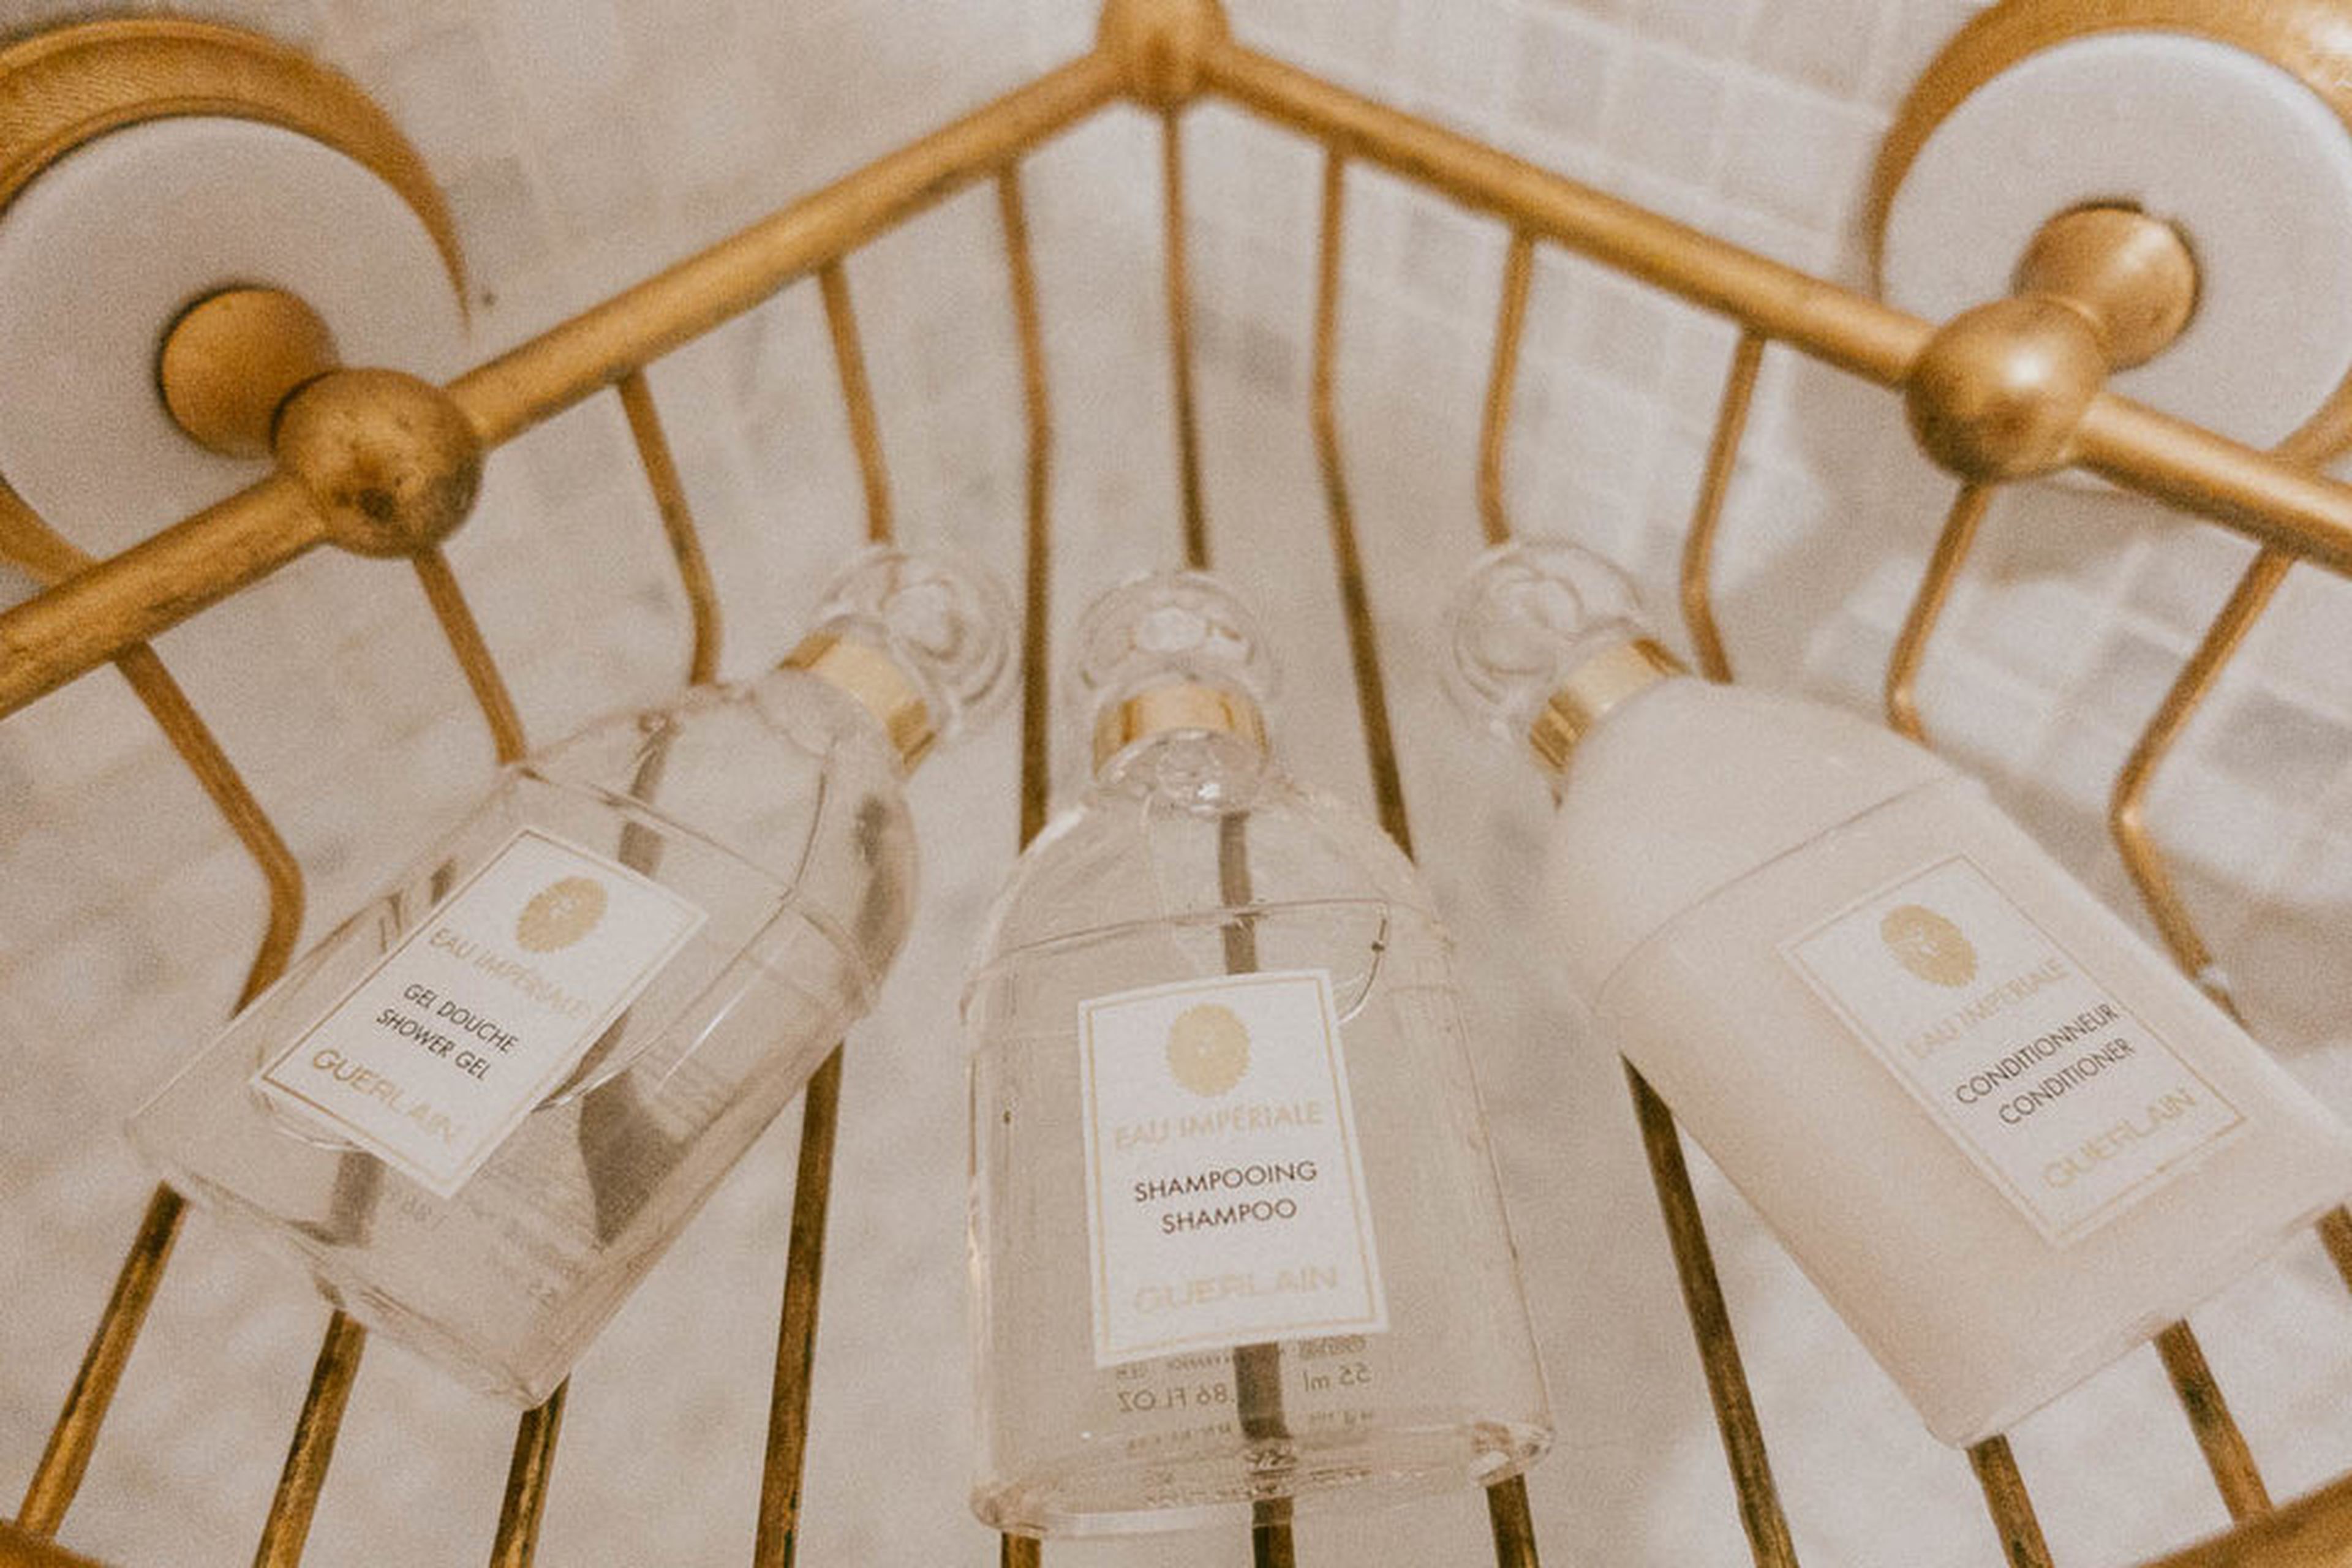 Todos los productos de baño proceden de la famosa casa francesa de perfumería y cuidado de la piel Guerlain, que también gestiona el spa del hotel